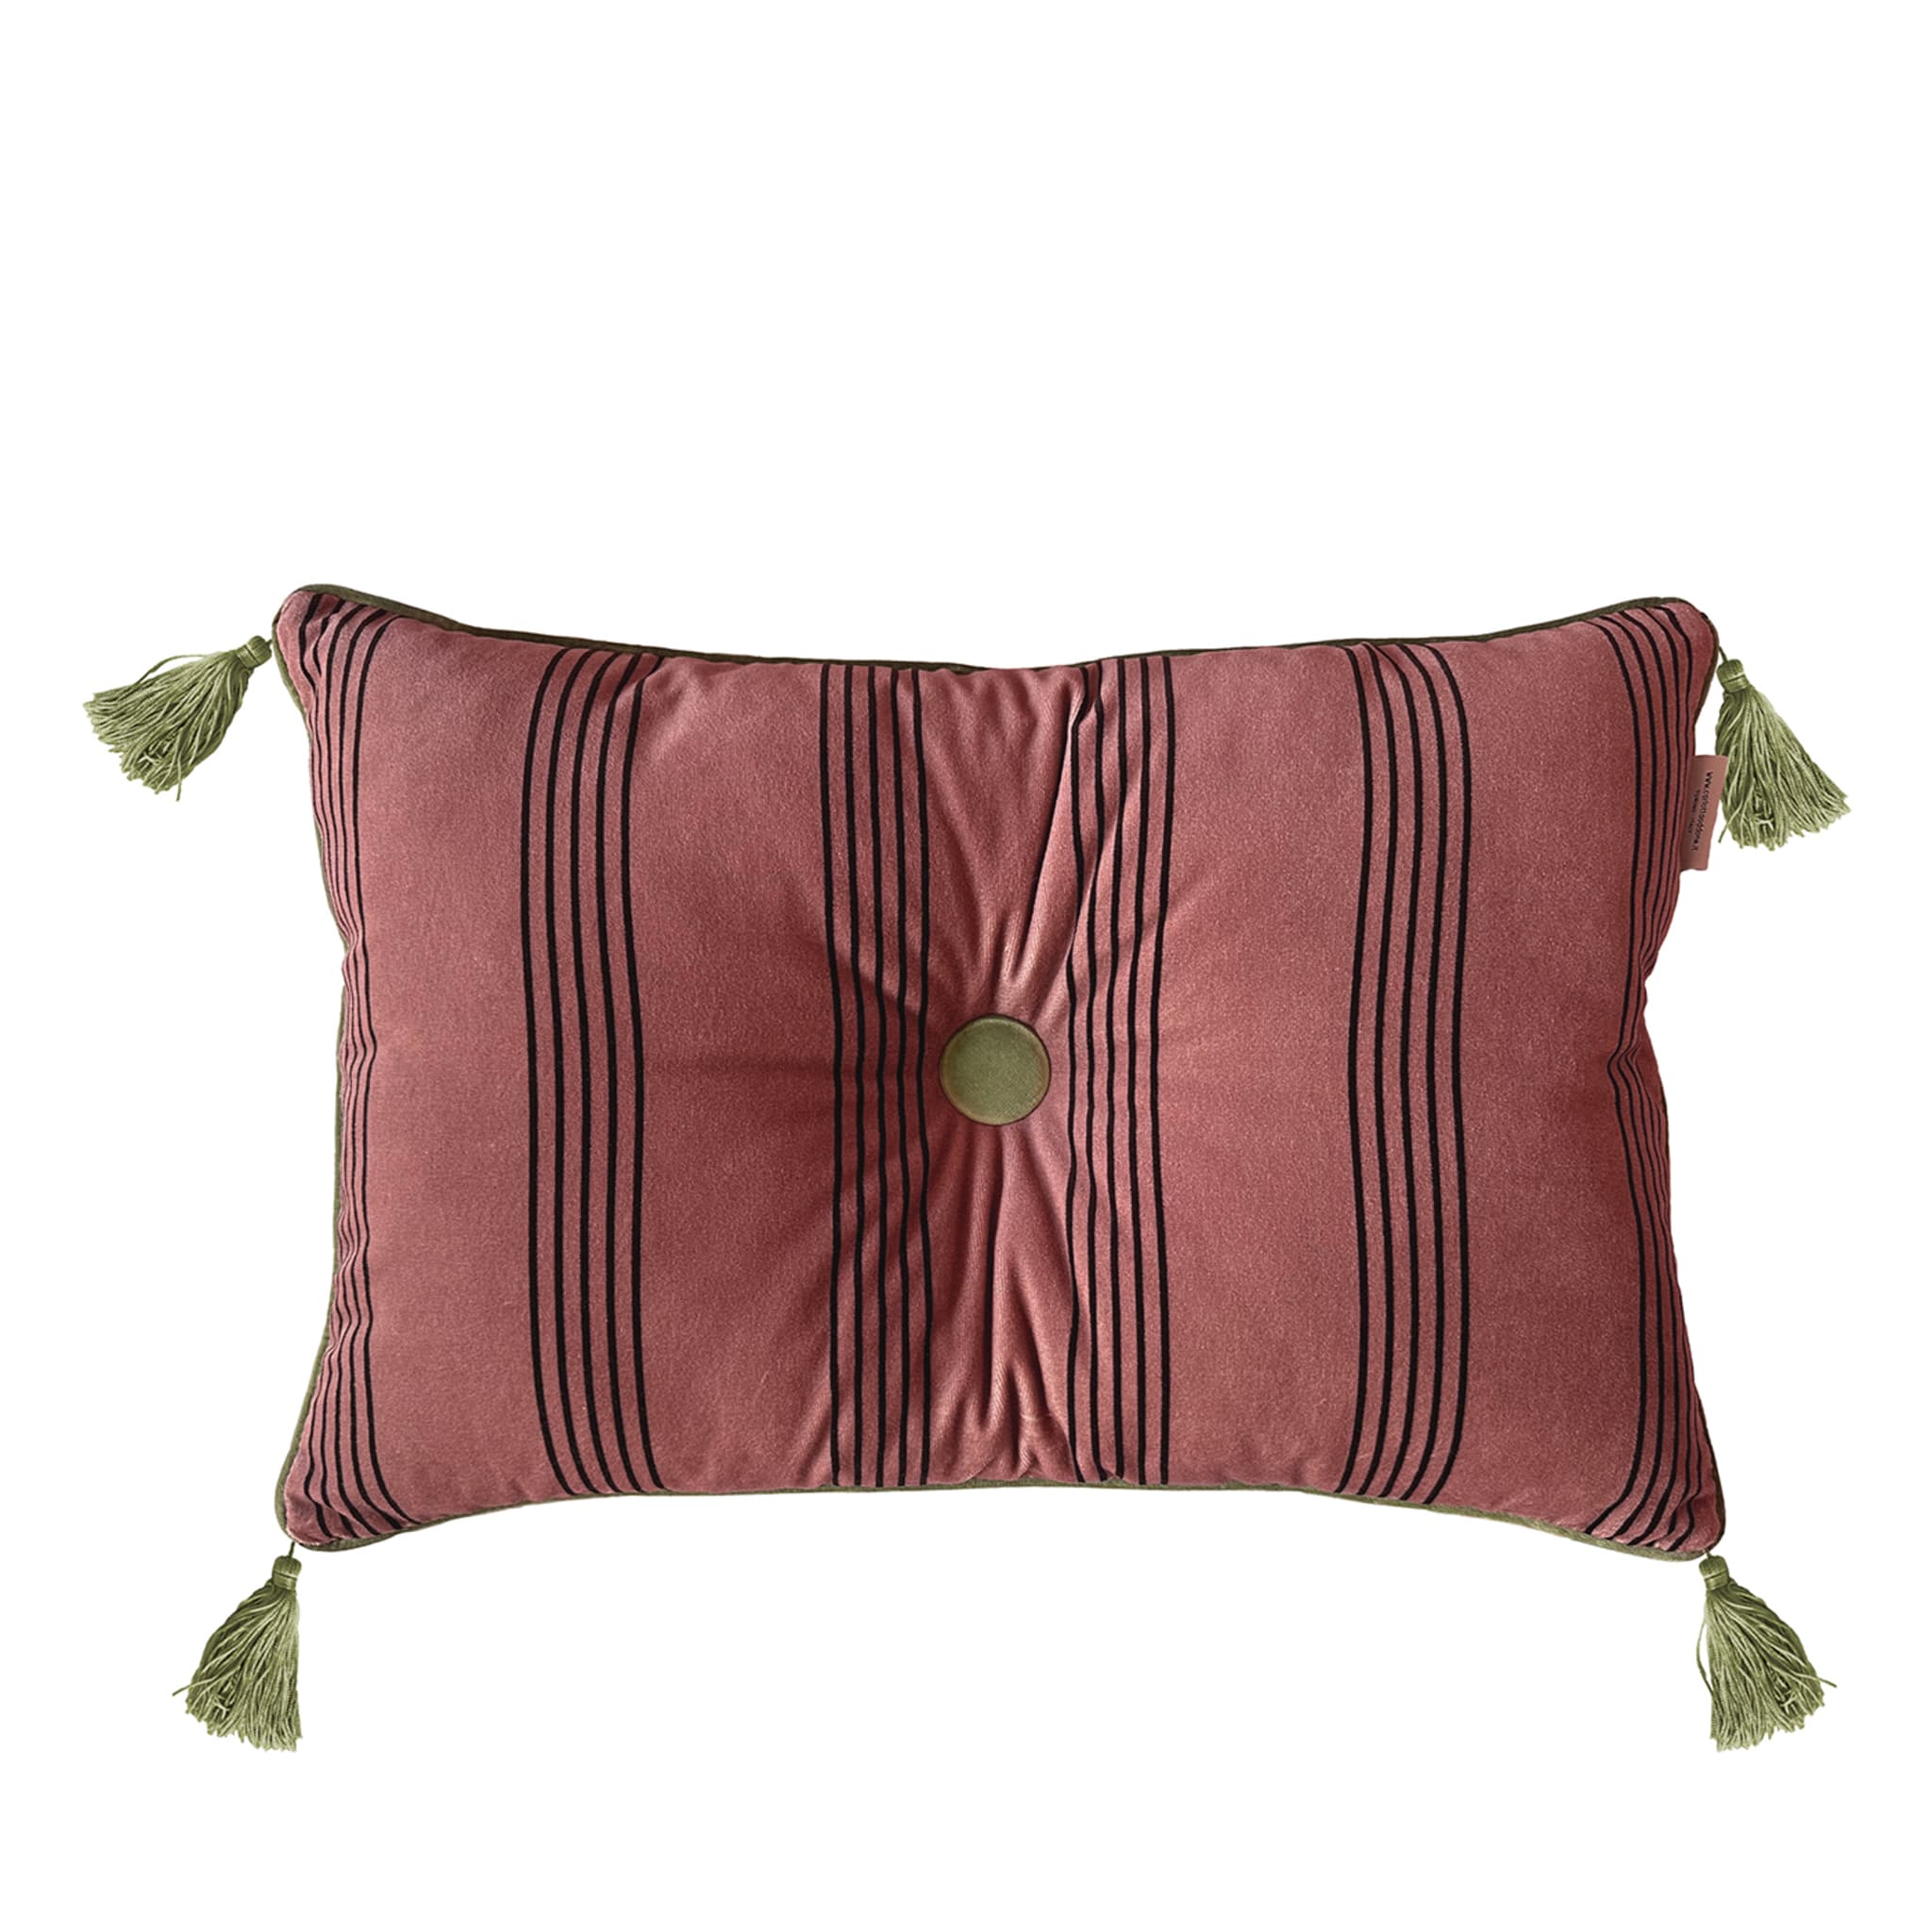 Cuscino Sweet Pillow rettangolare a righe rosa antico - Vista principale